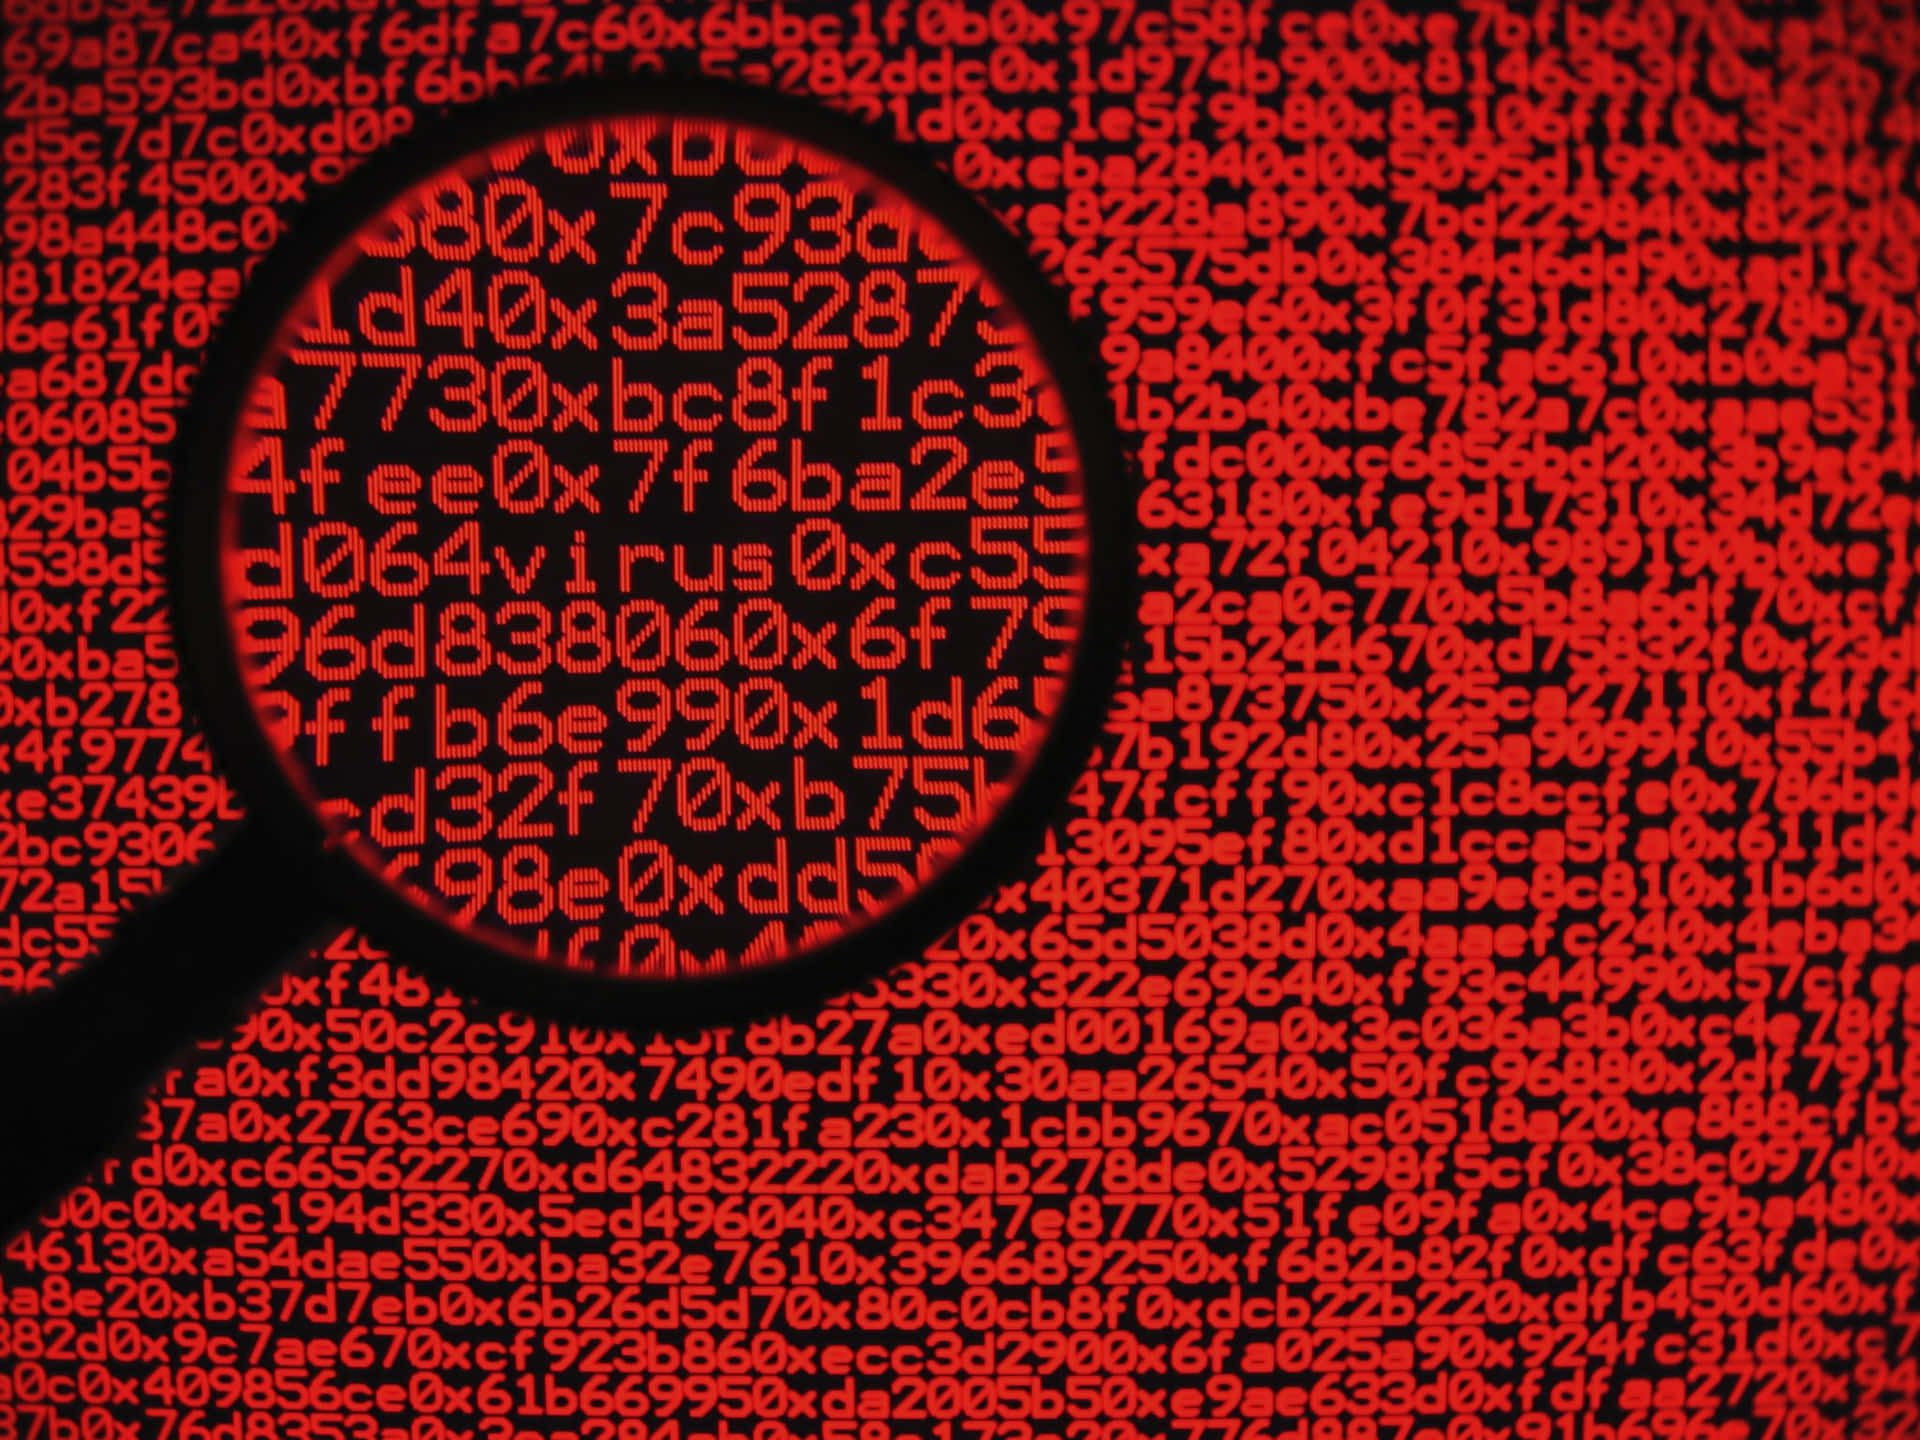 Cybersicherheitsexpertewehrt Sich Gegen Die Stetig Wachsende Bedrohung Durch Malware. Wallpaper